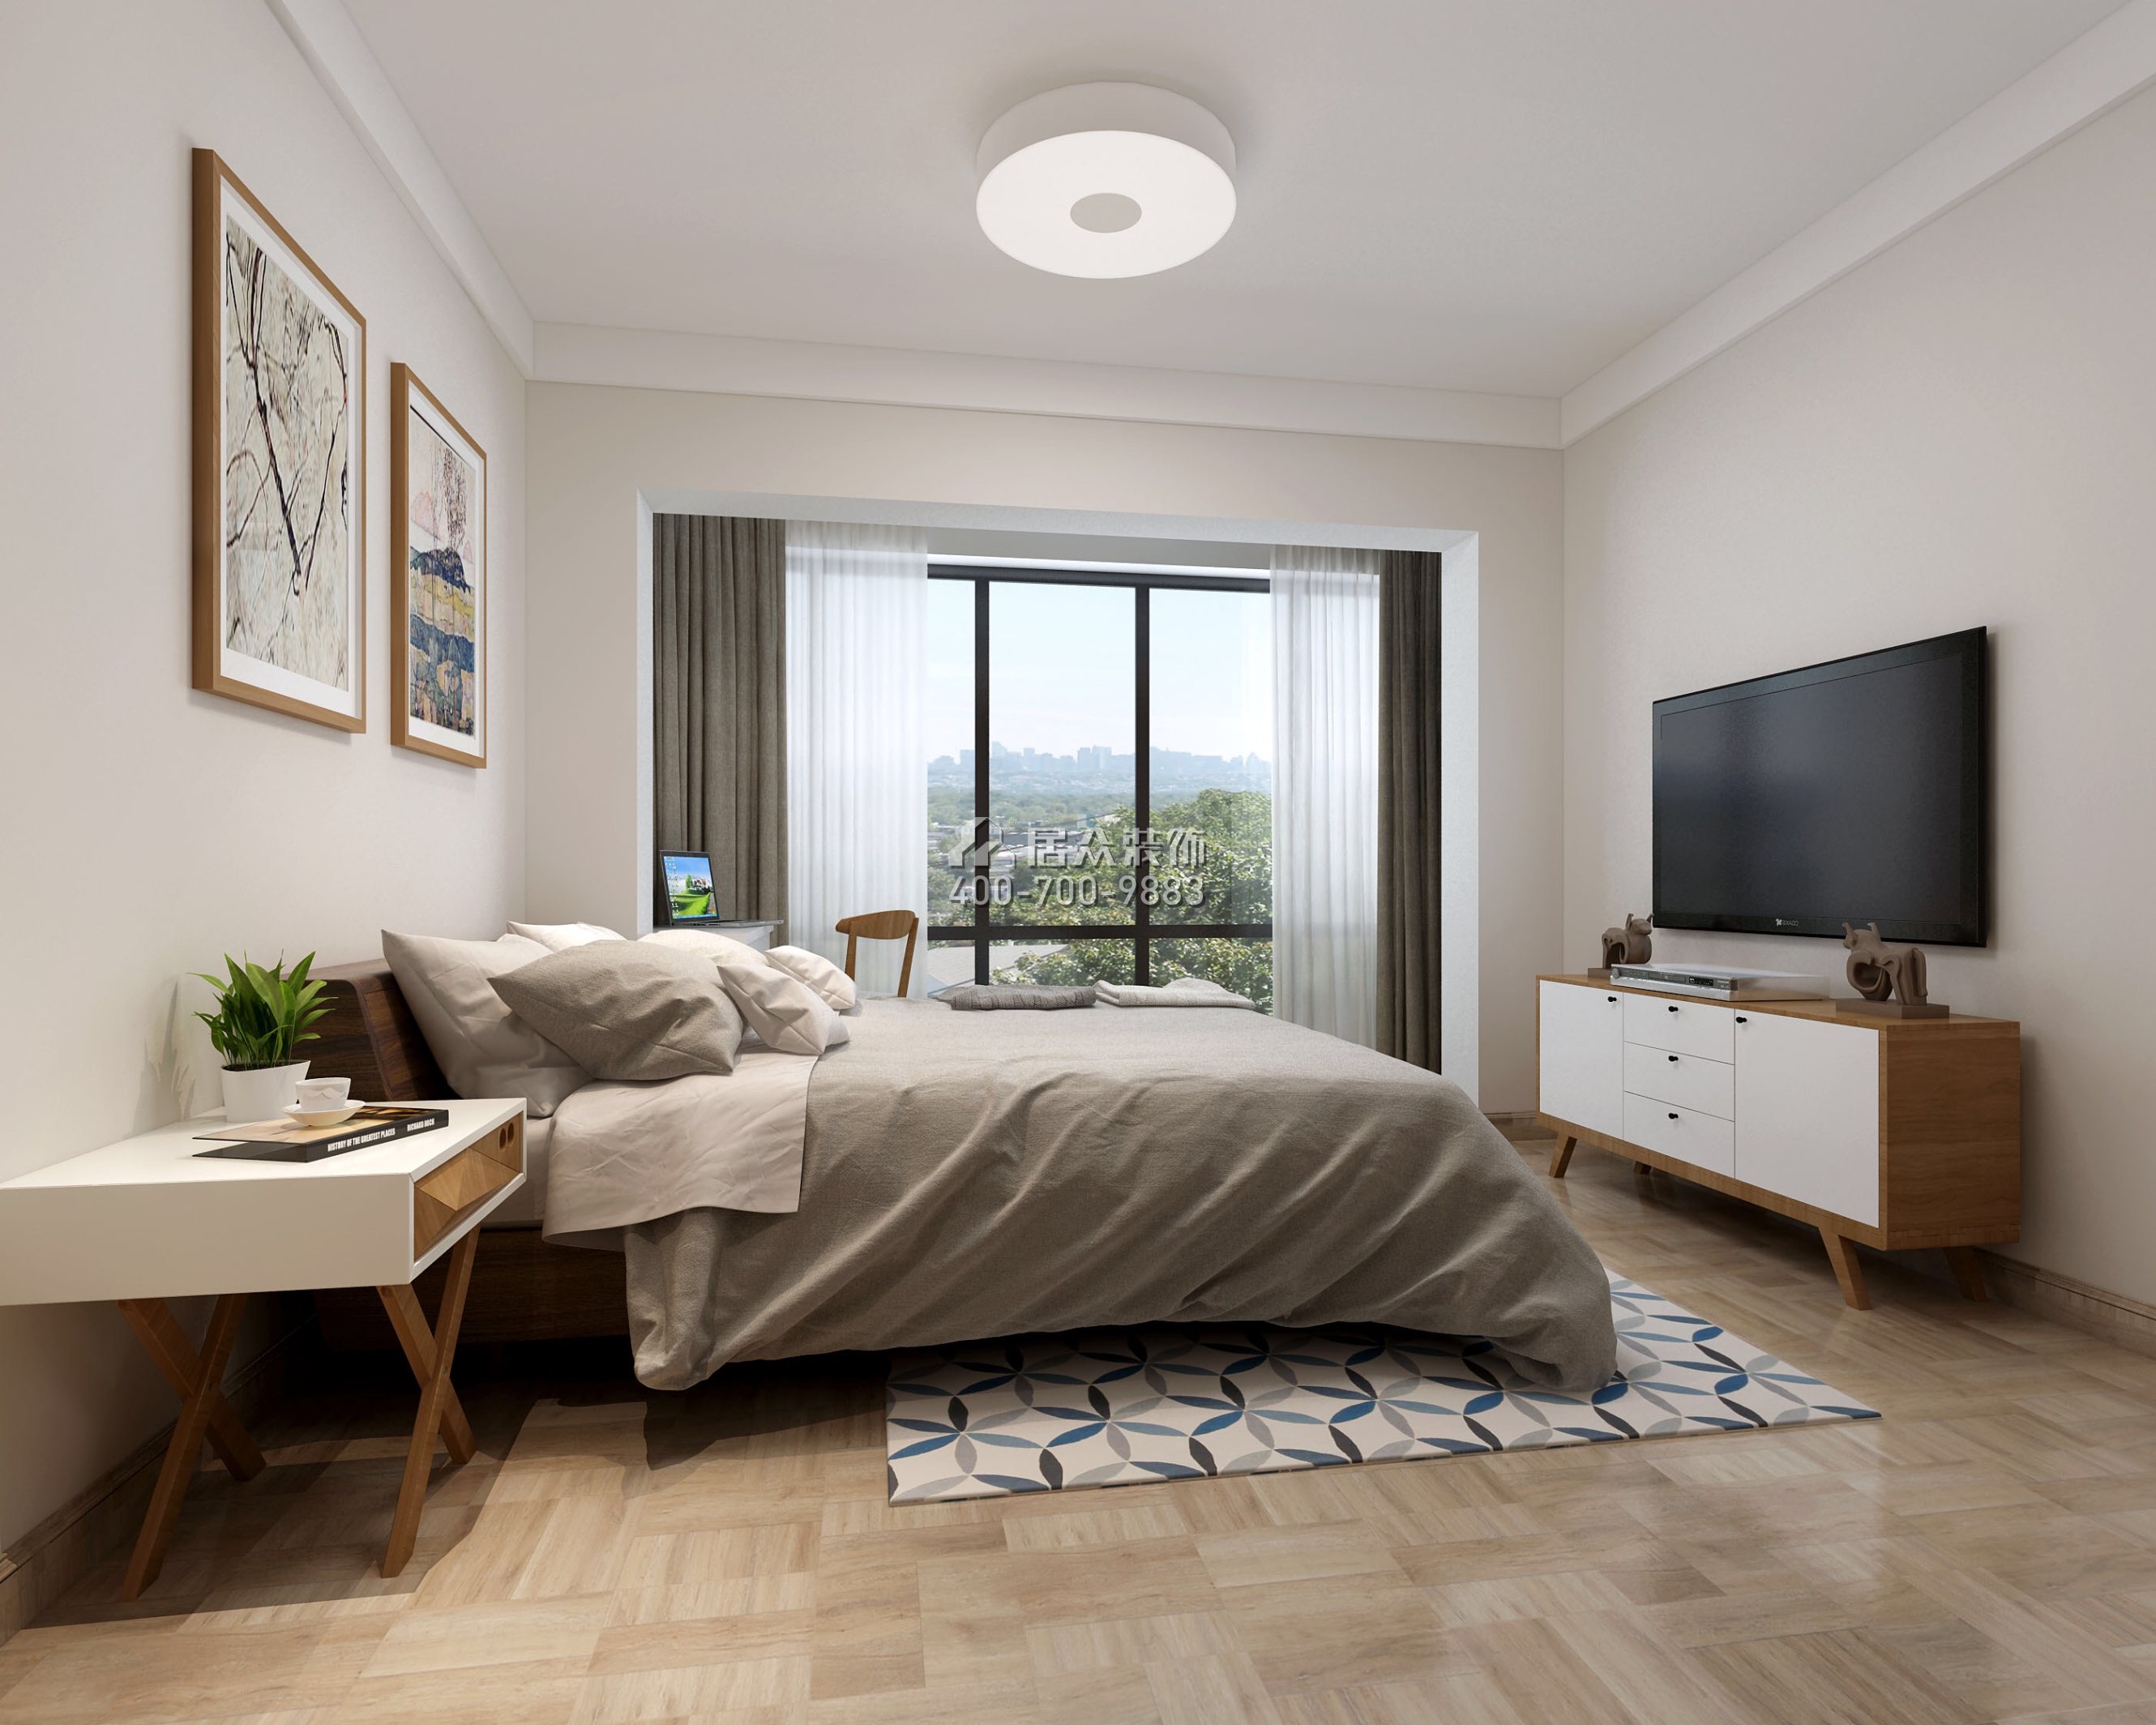 万象新园100平方米现代简约风格平层户型卧室装修效果图